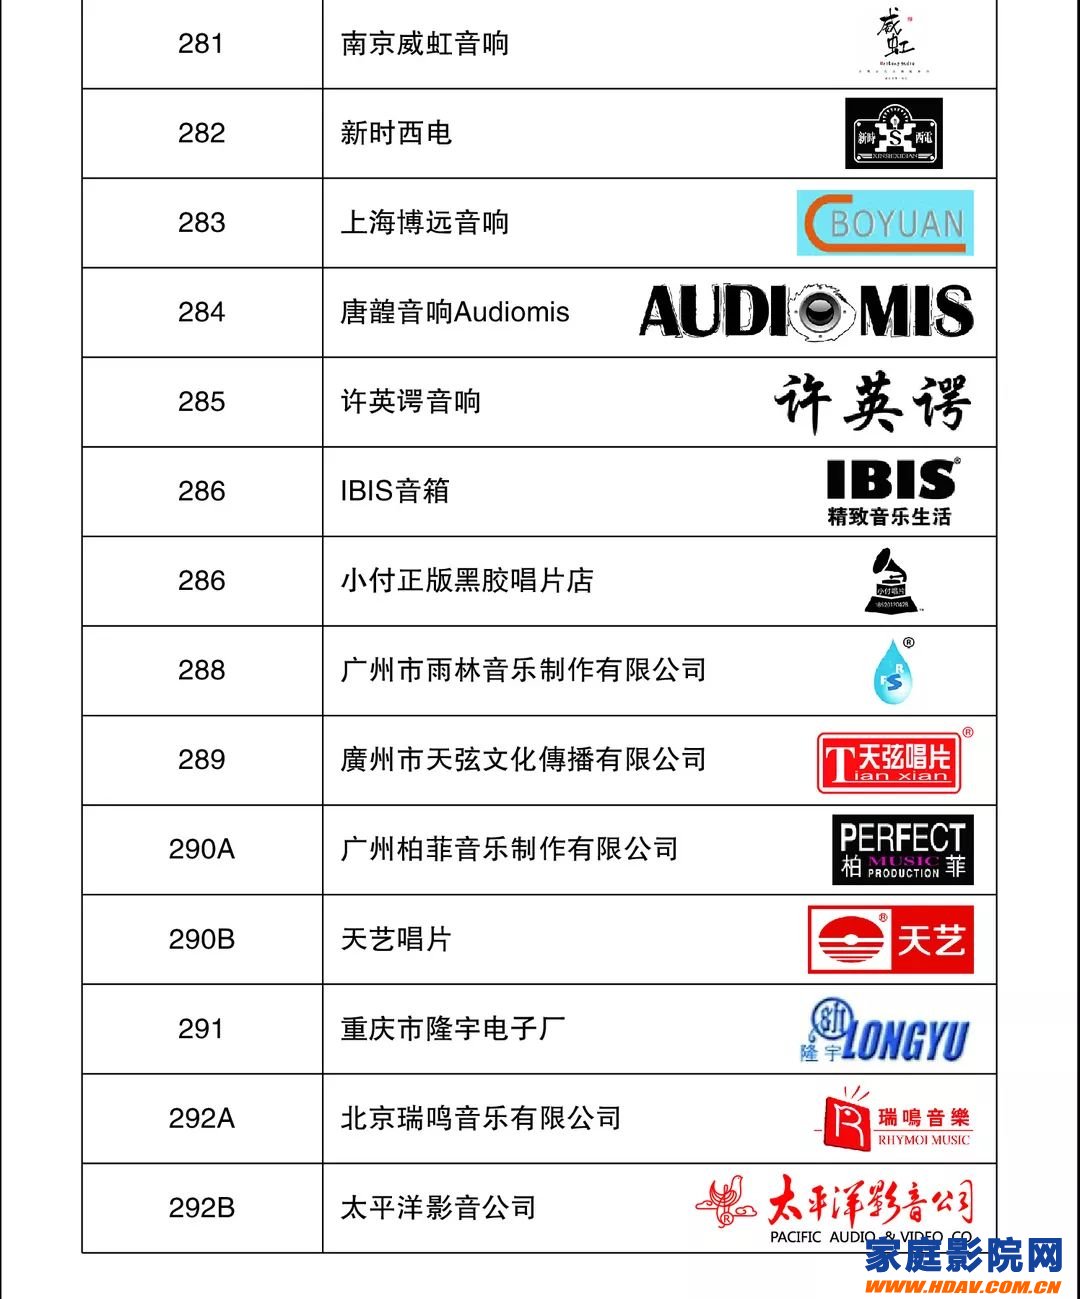 上海国际高级HIFI演示会SIAV 2019参观指南(图22)